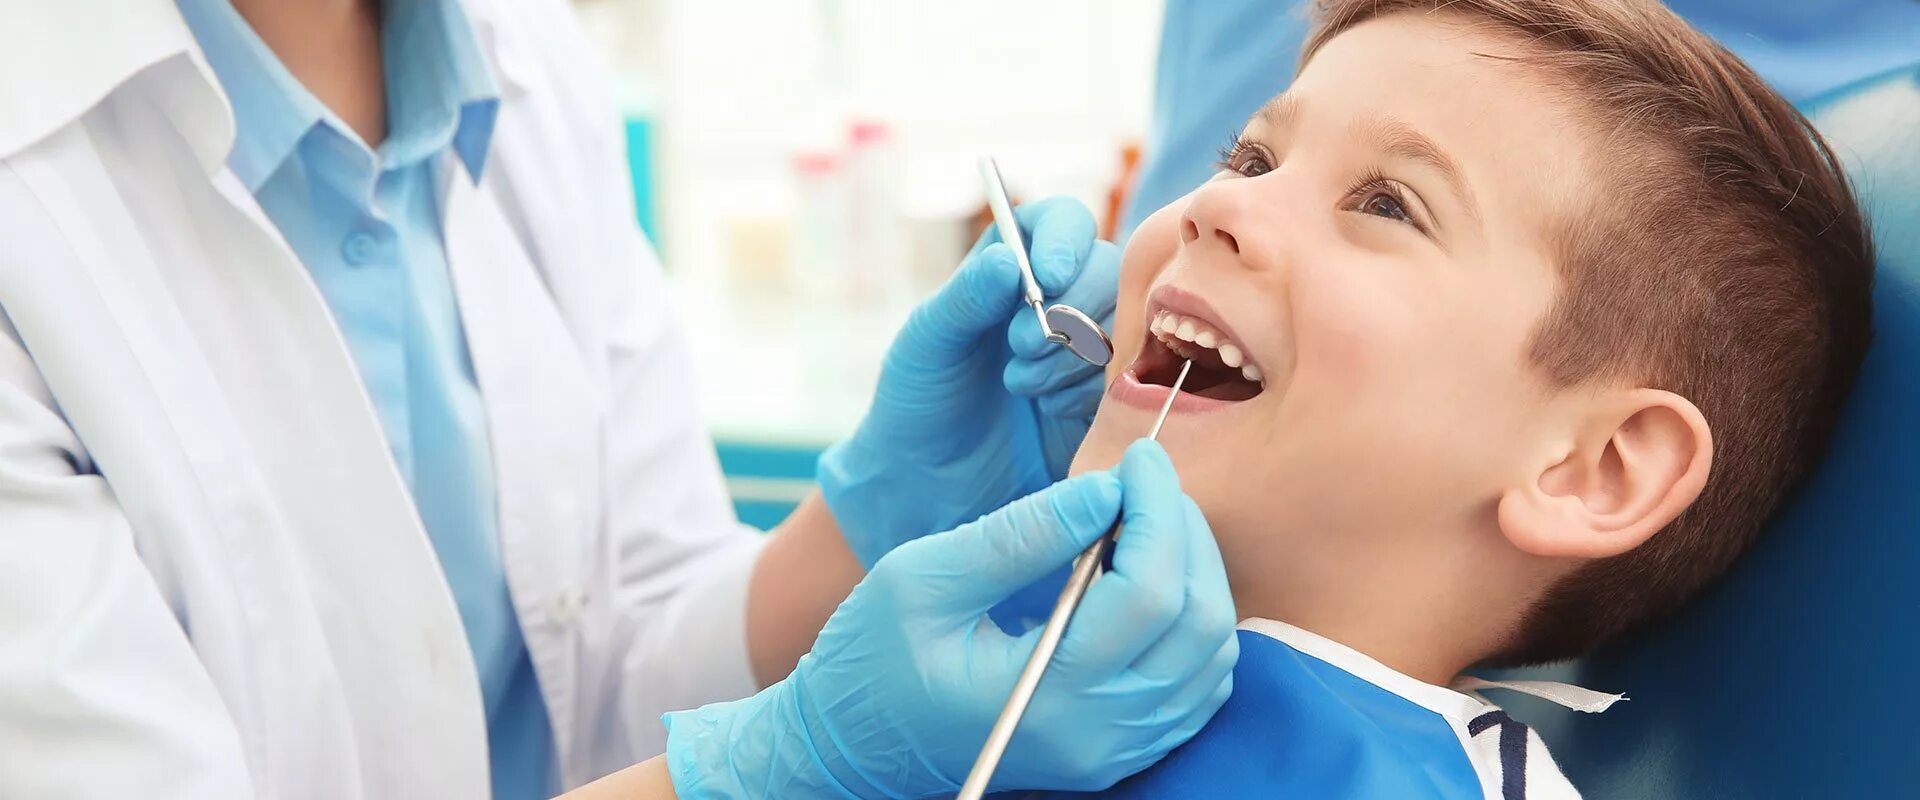 Удалять зуб ребенку 5 лет. Ребенок у стоматолога. Стоматология дети. Детские зубы у стоматолога.